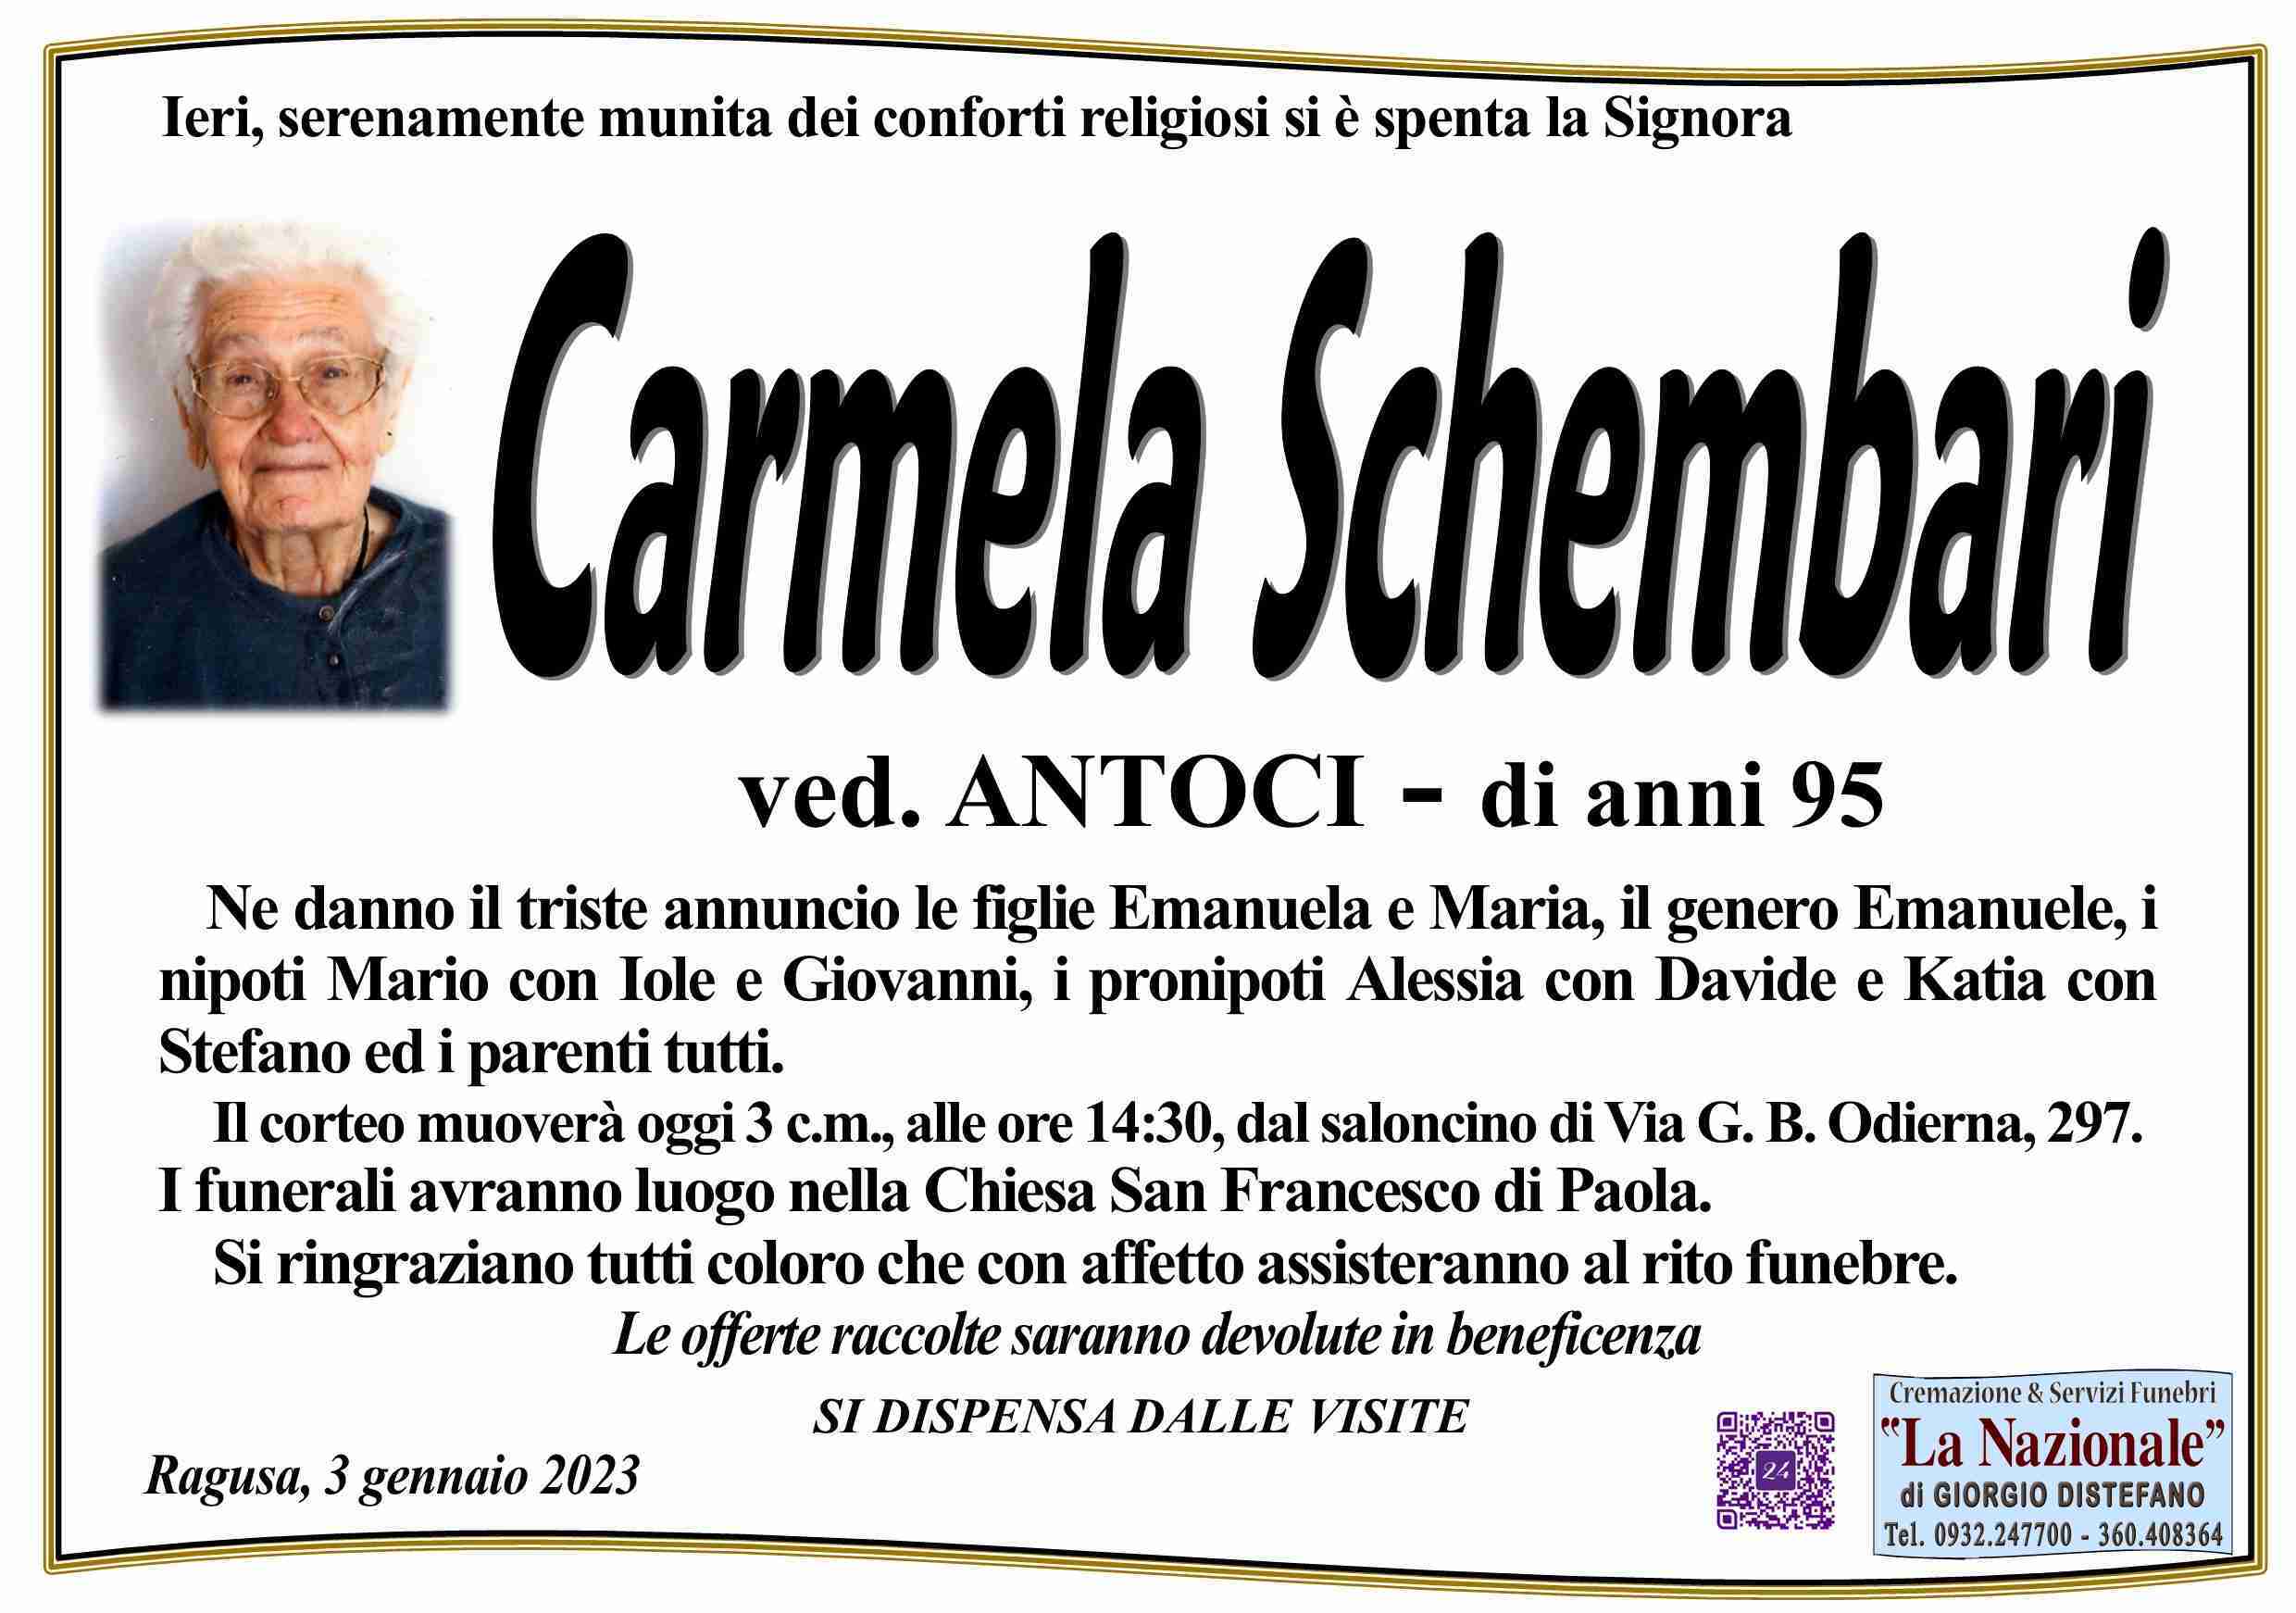 Carmela Schembari